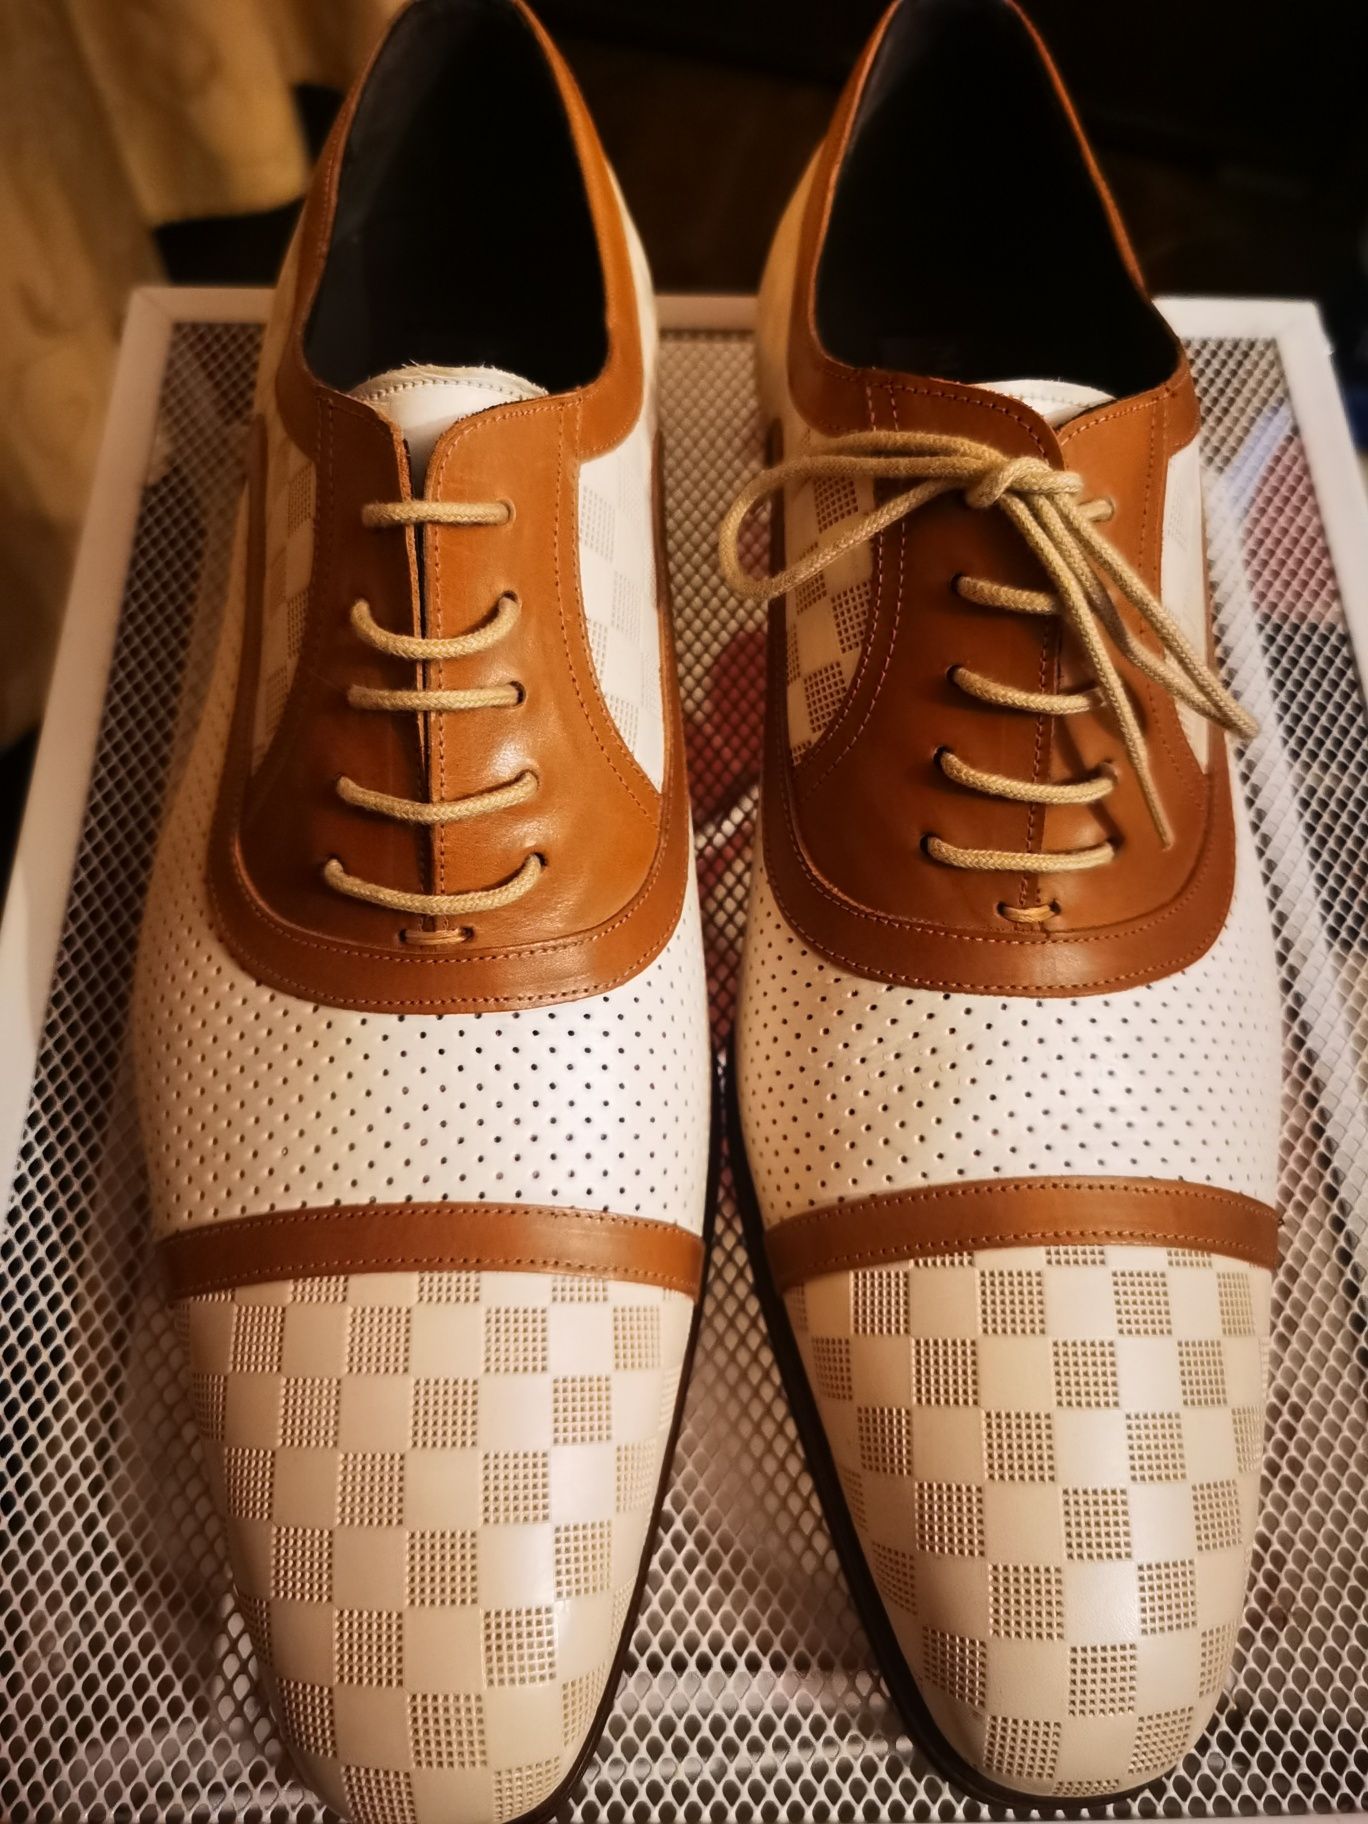 Vand pantofi bărbat noi nouti marca Mezlan